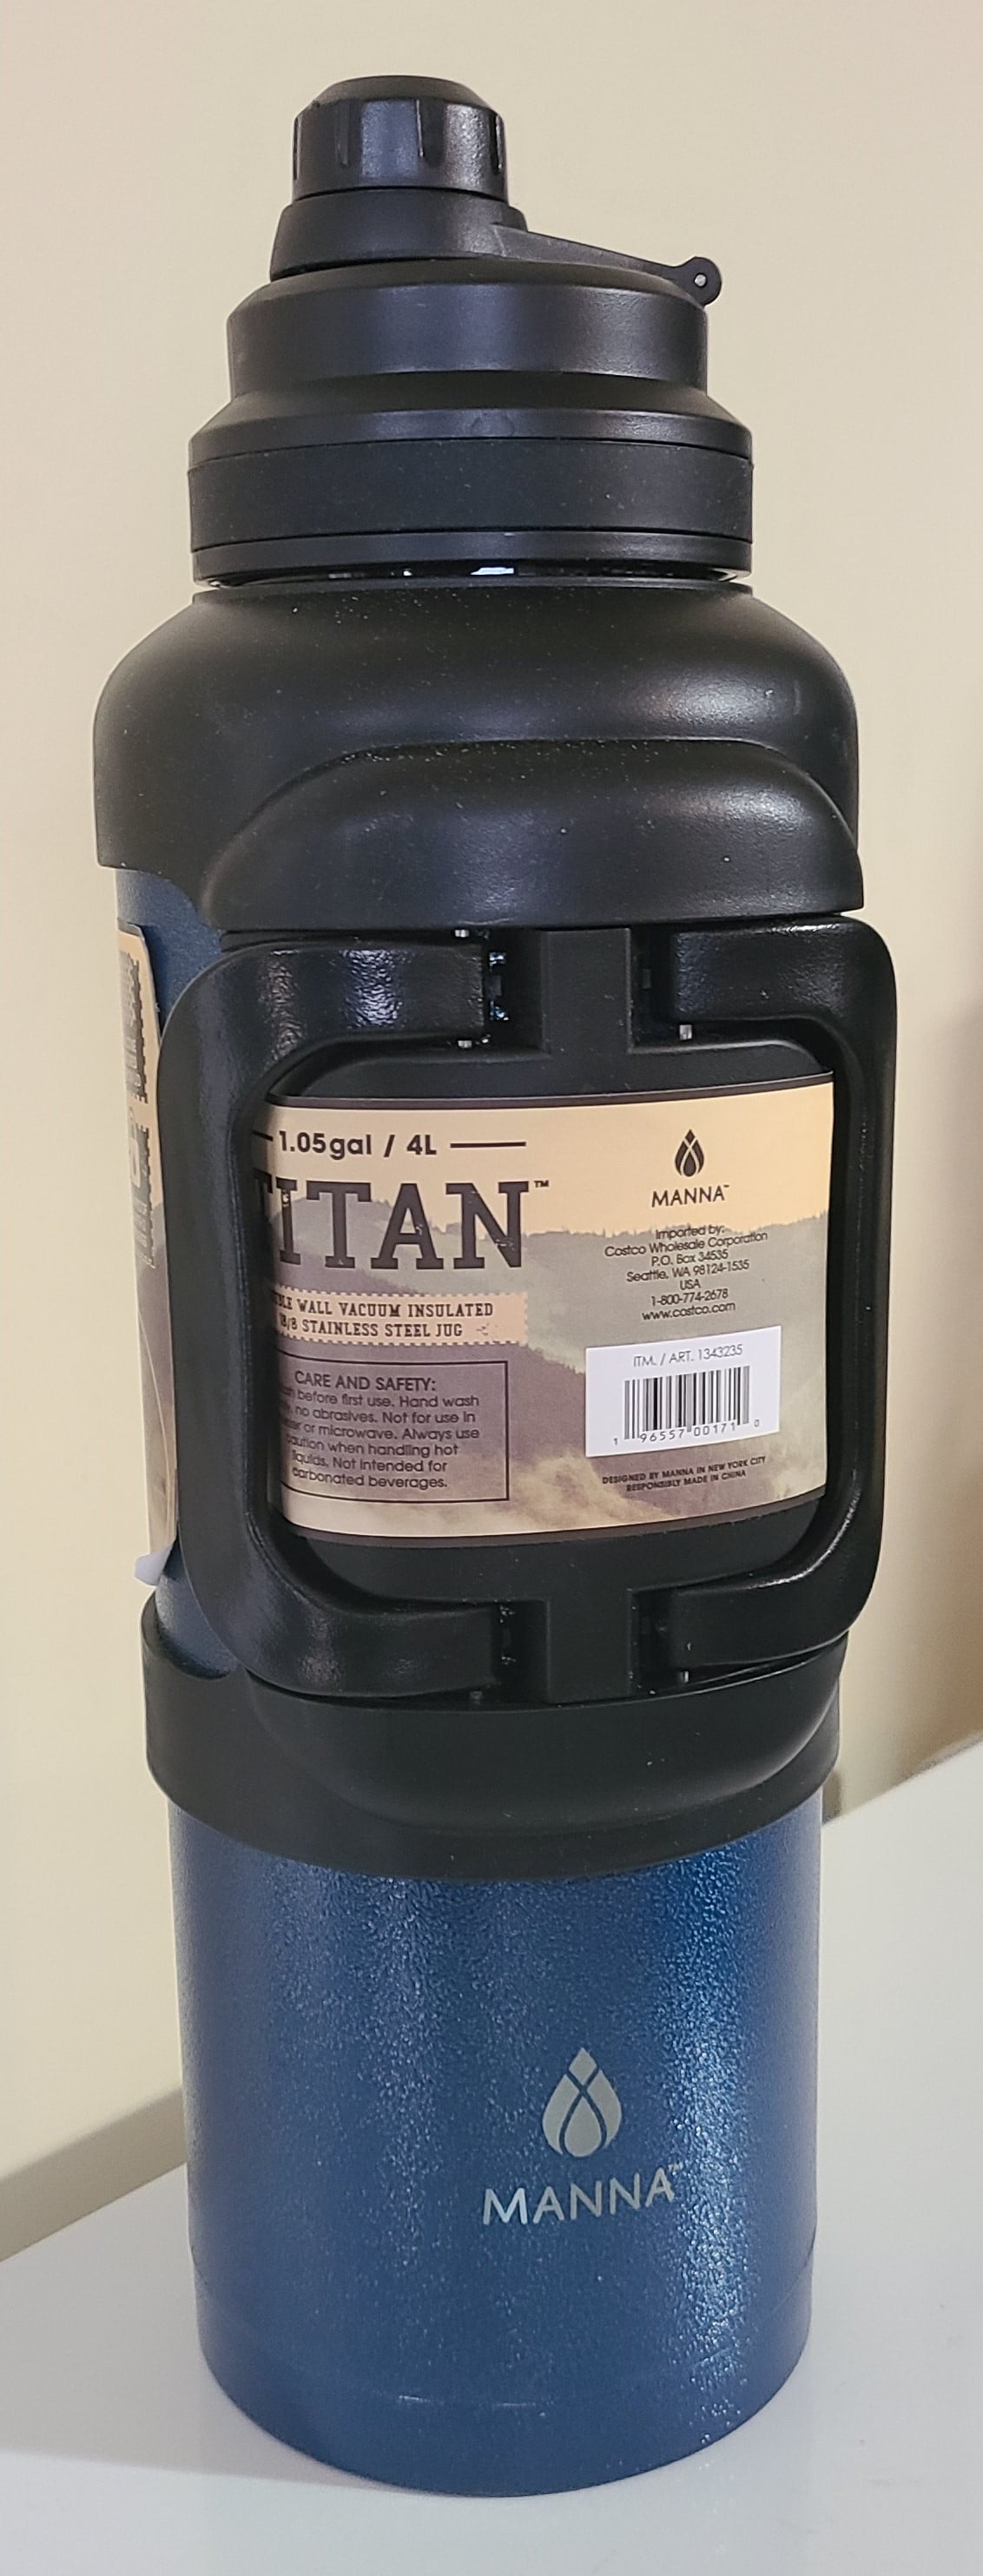 Manna Titan Stainless Steel 1 Gallon Jug